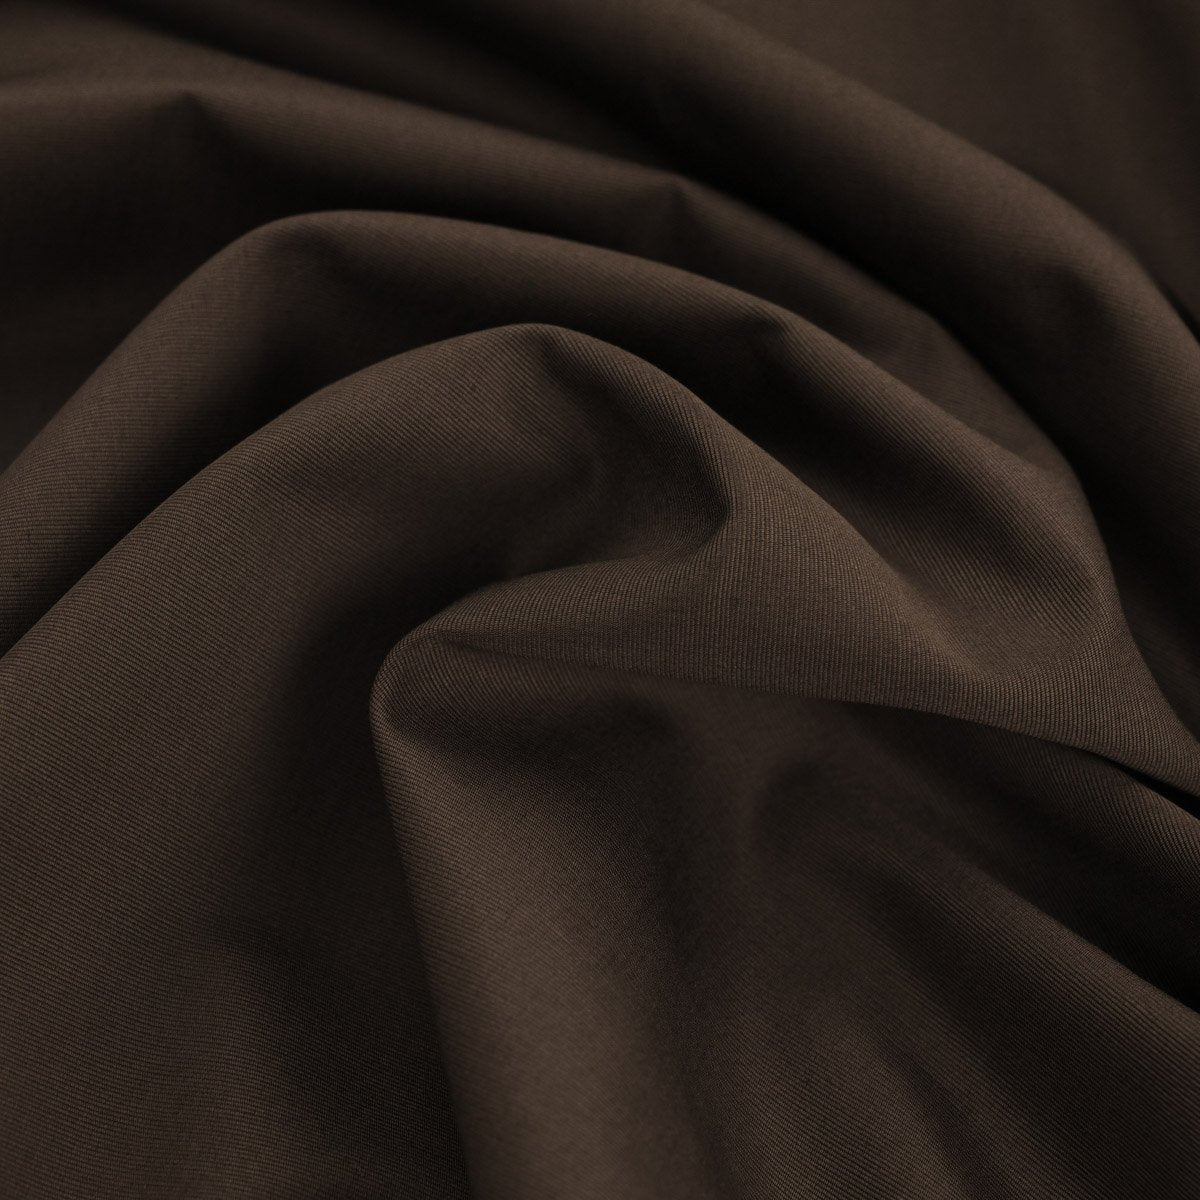 Brown Grosgrain Fabric 96022